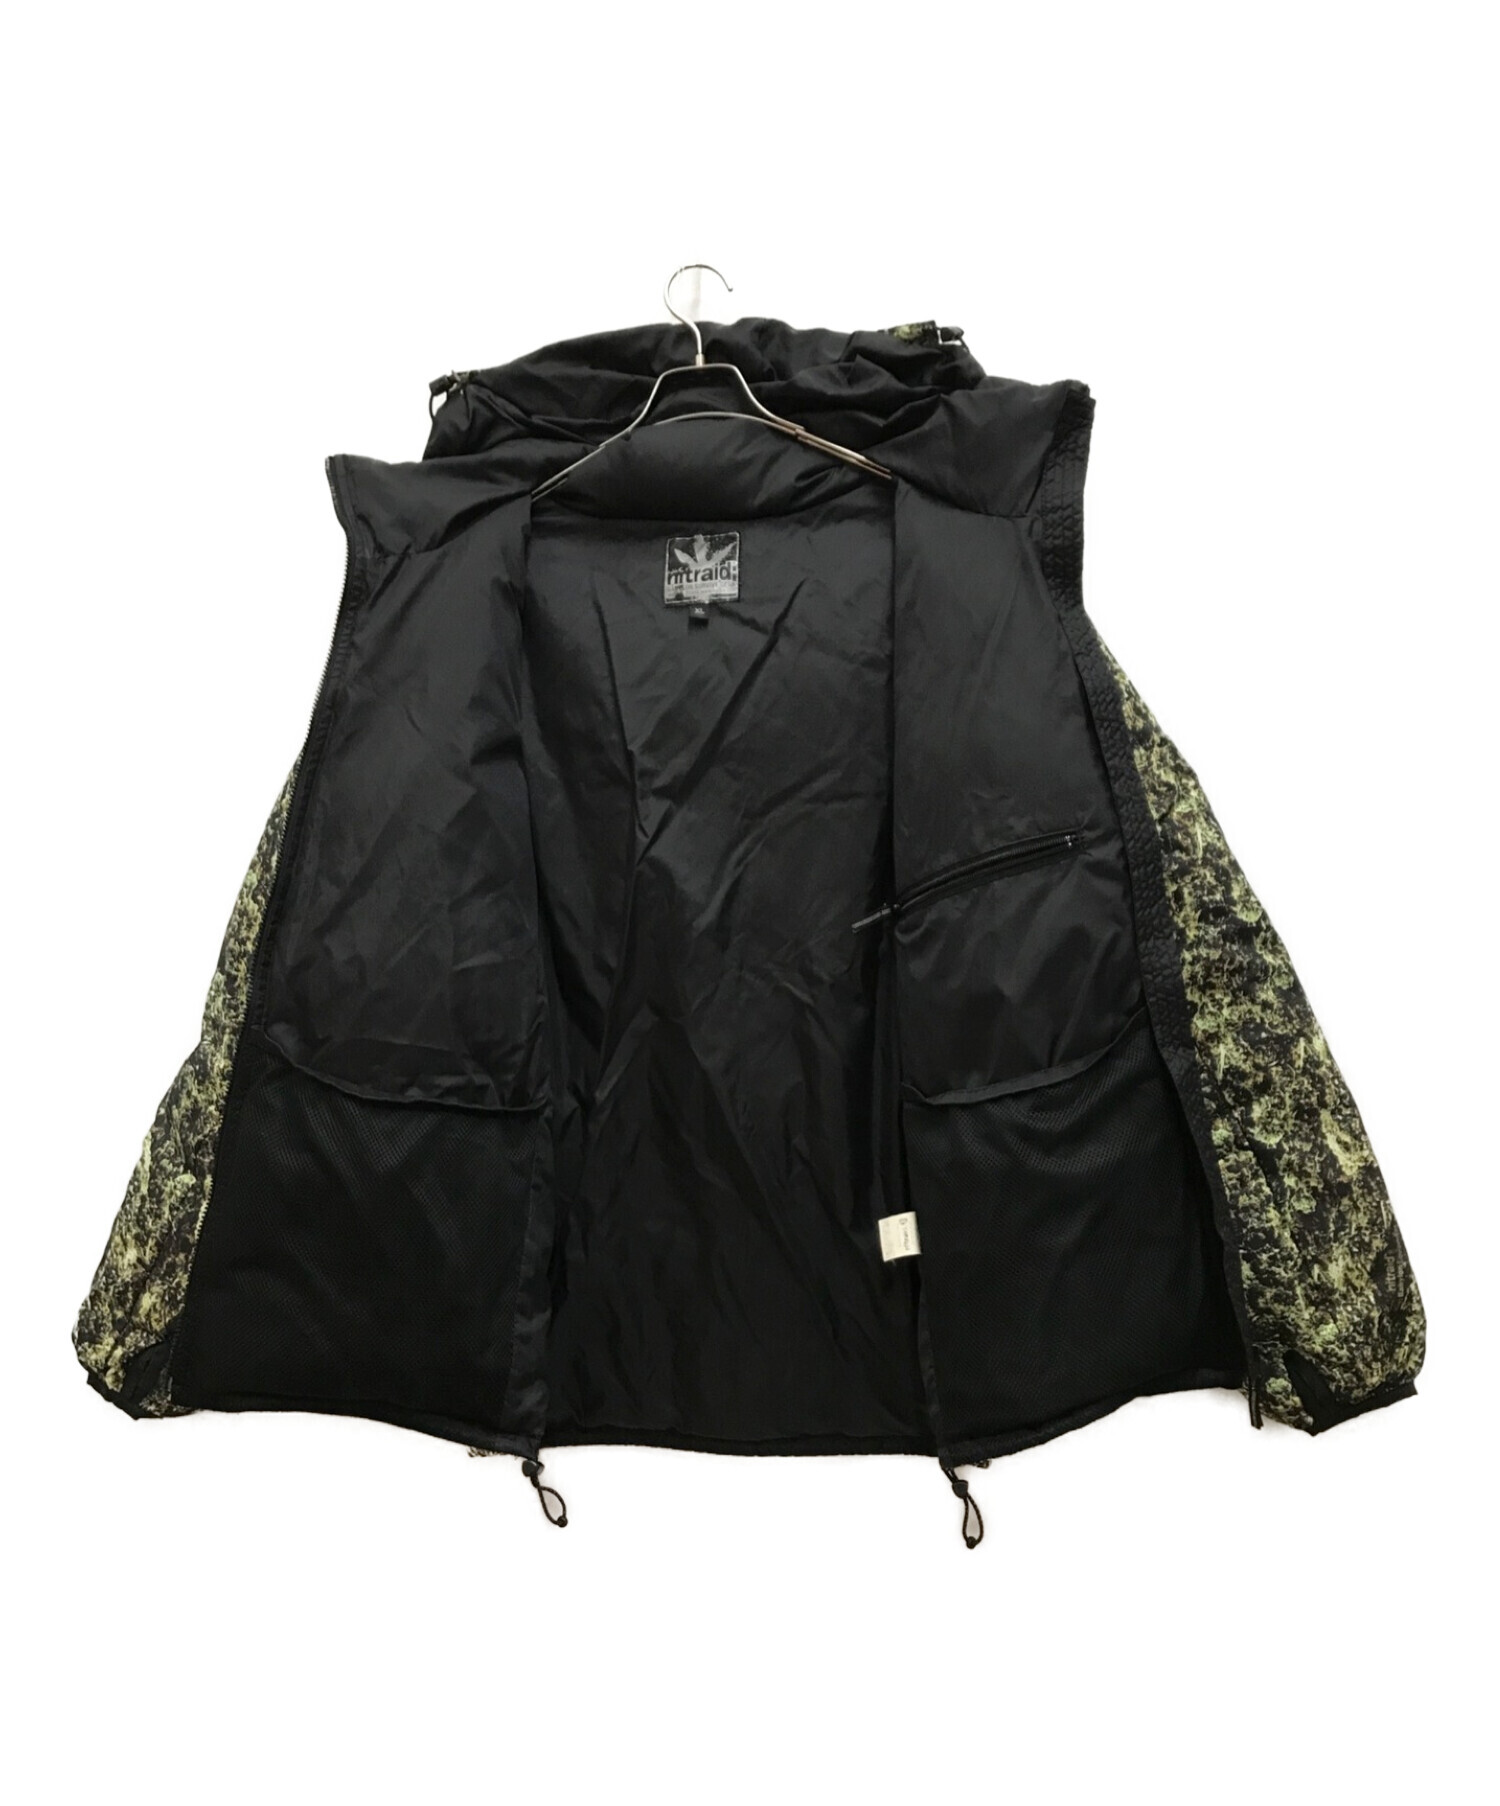 NITRAID (ナイトレイド) ダウンジャケット ブラック×グリーン サイズ:XL